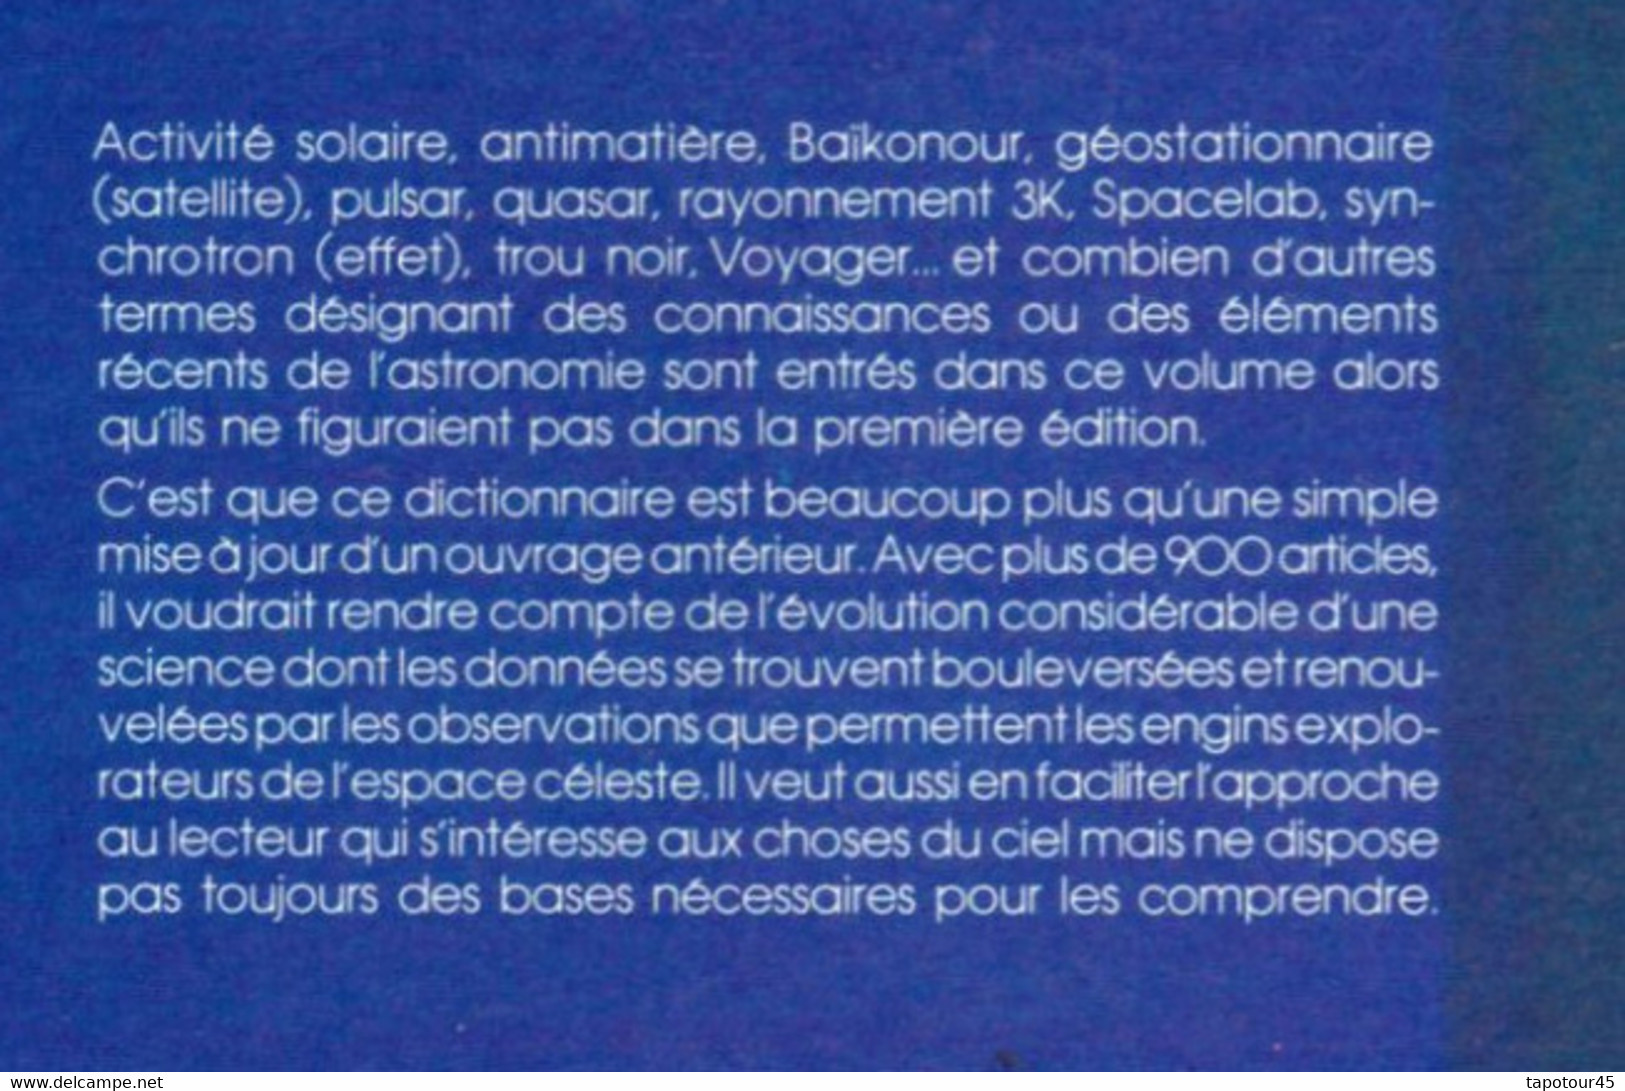 Tir Vert 1) Cosmos Et Aviation > Livre> Fran >Dictionnaire De L’astronomie "Larousse" - Astronomia